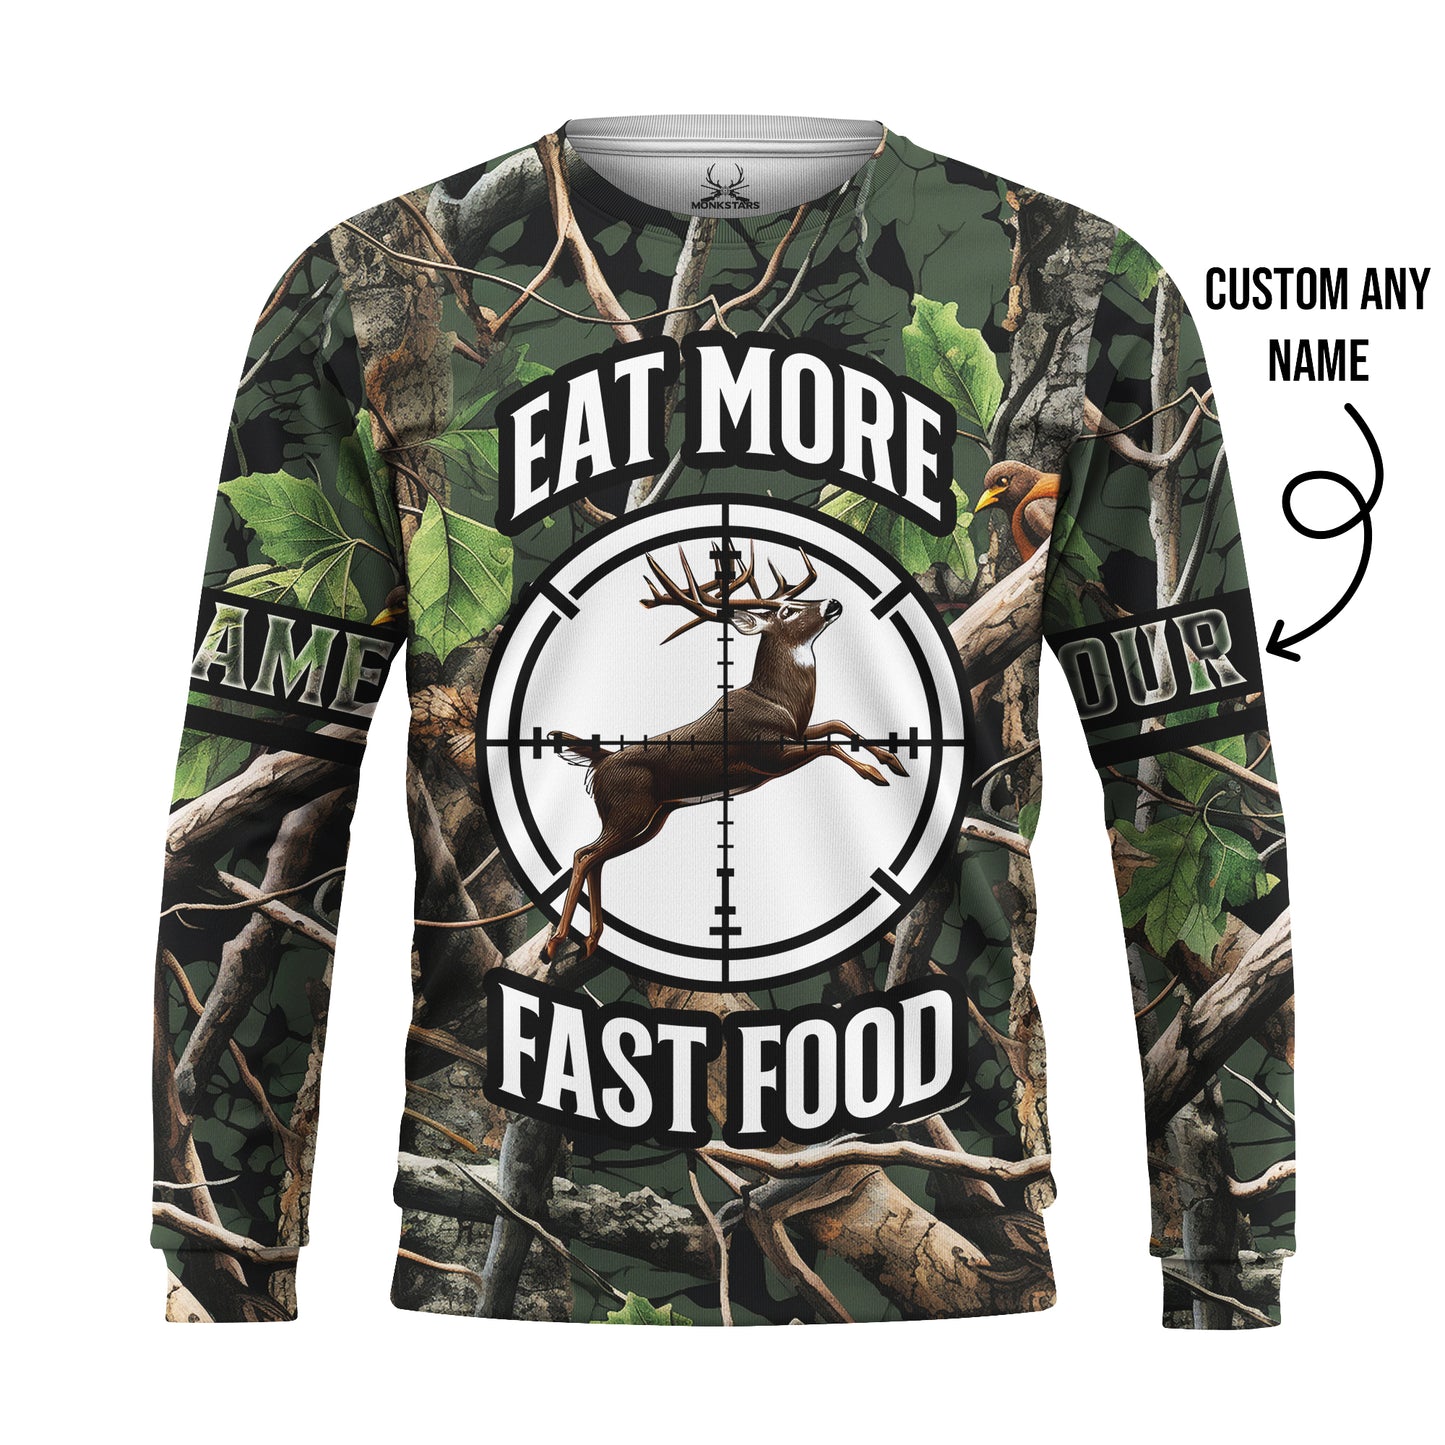 Deer Hunting Hoodie – Eat More Fast Food